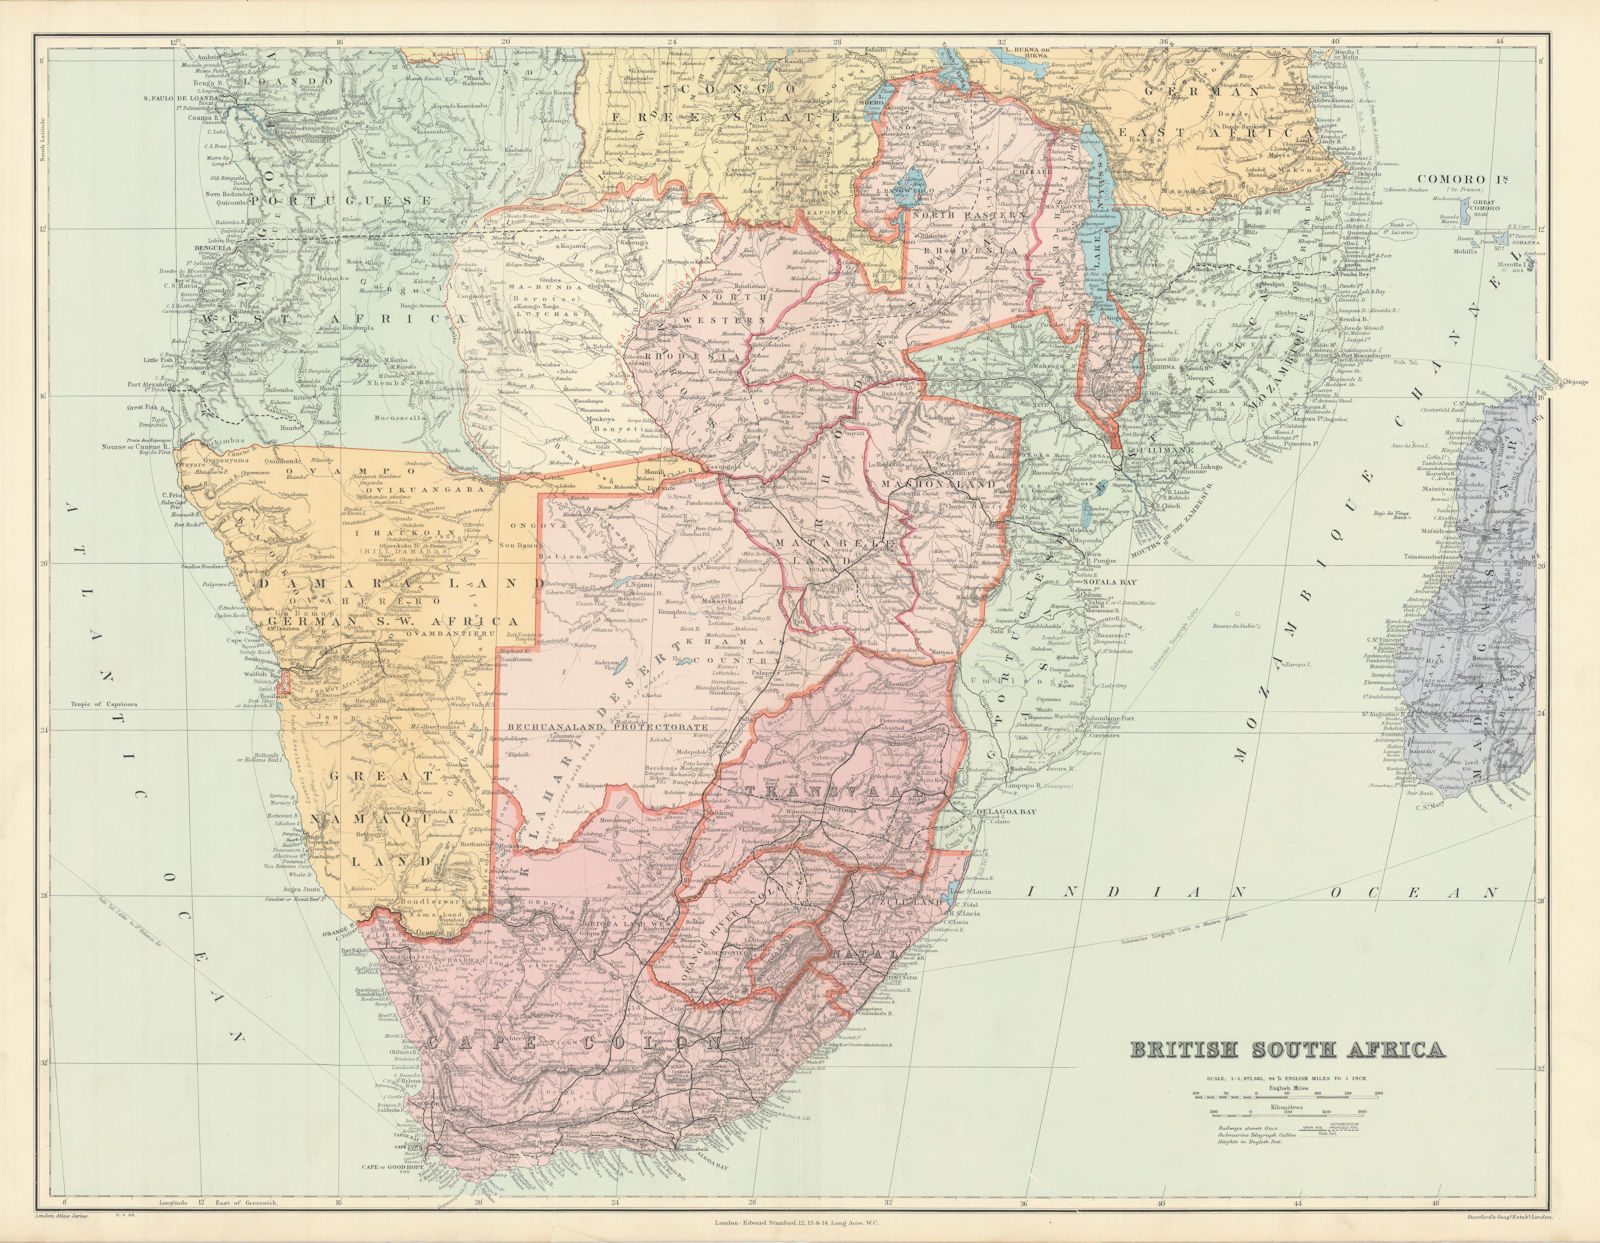 British Southern Africa. Rhodesia Bechuanaland Botswana Zambia STANFORD 1904 map